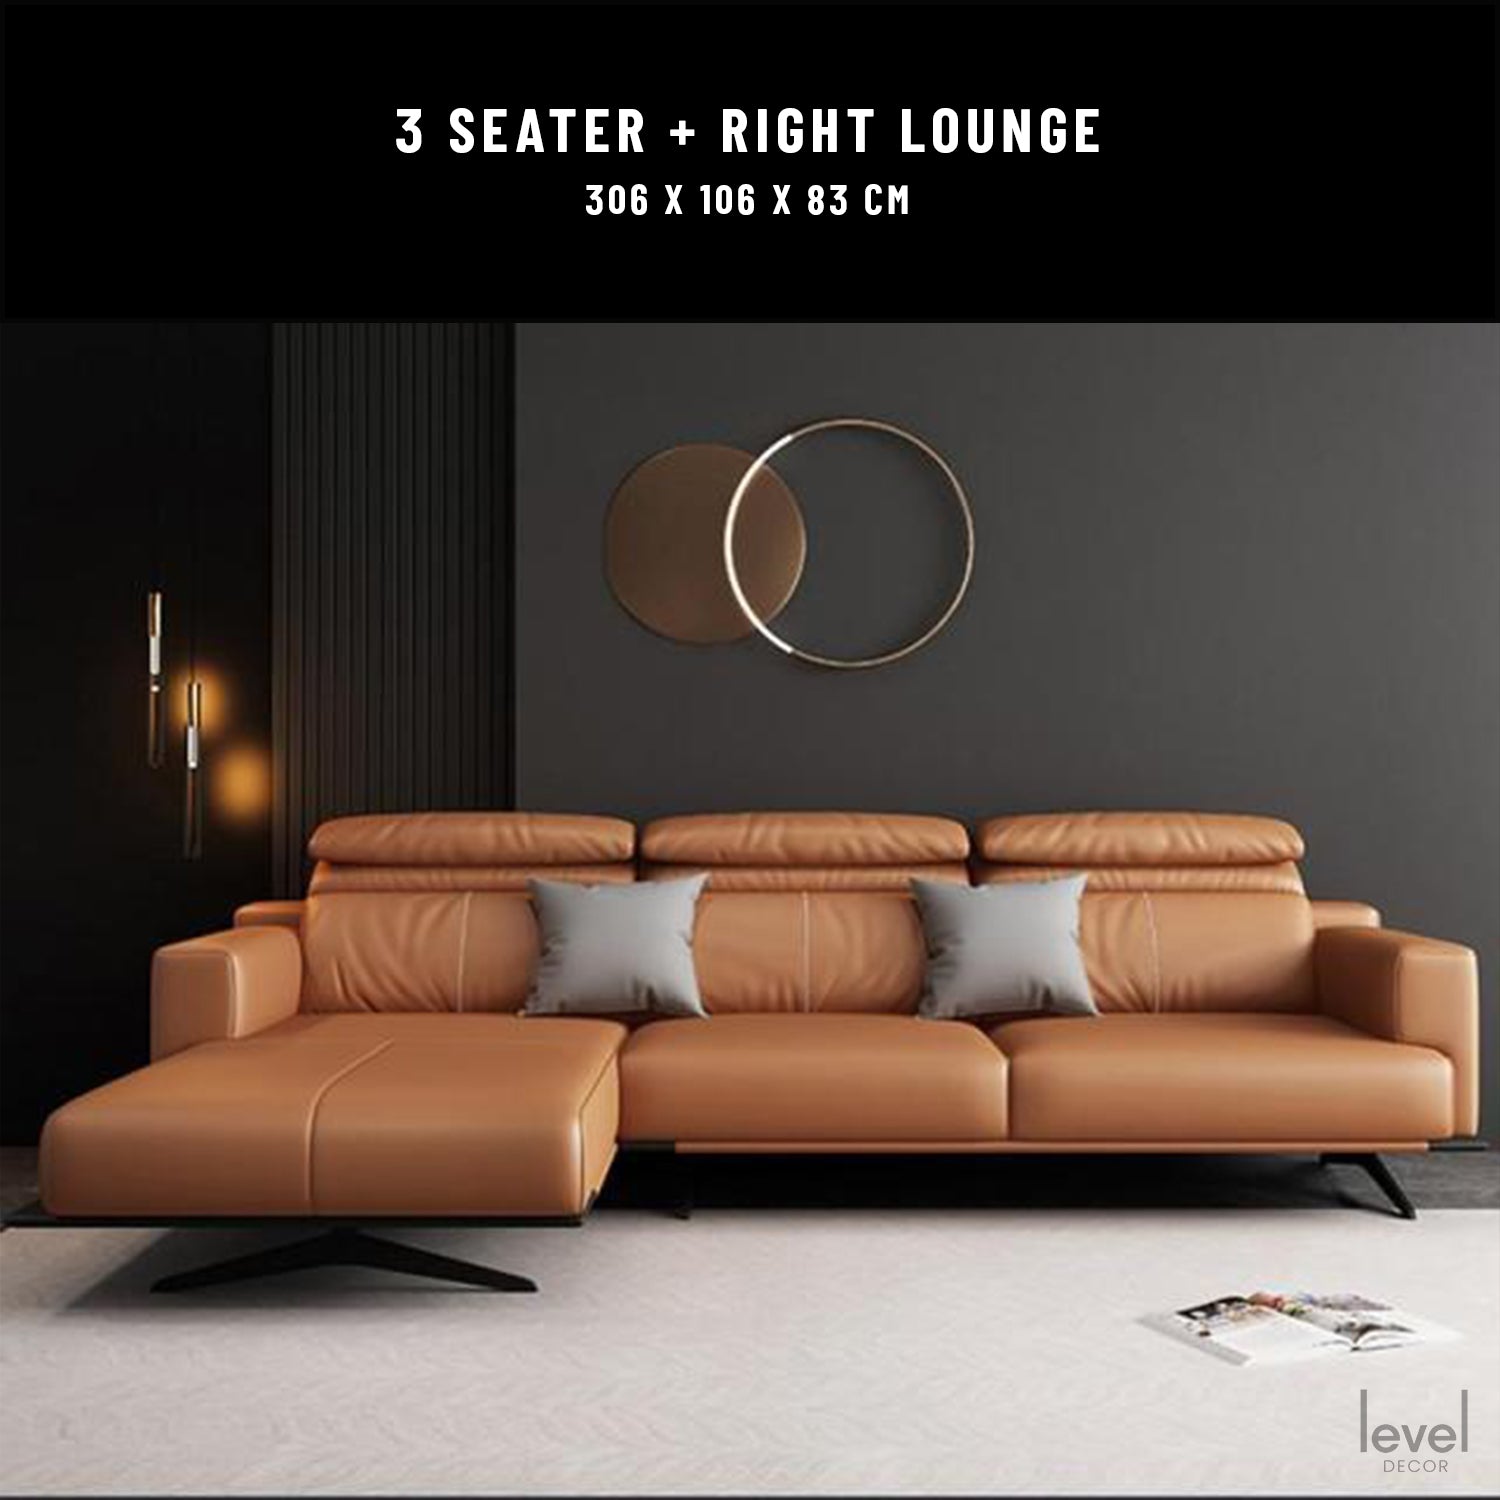 Romeo Italian Leather Sofa - right lounge - Level Decor